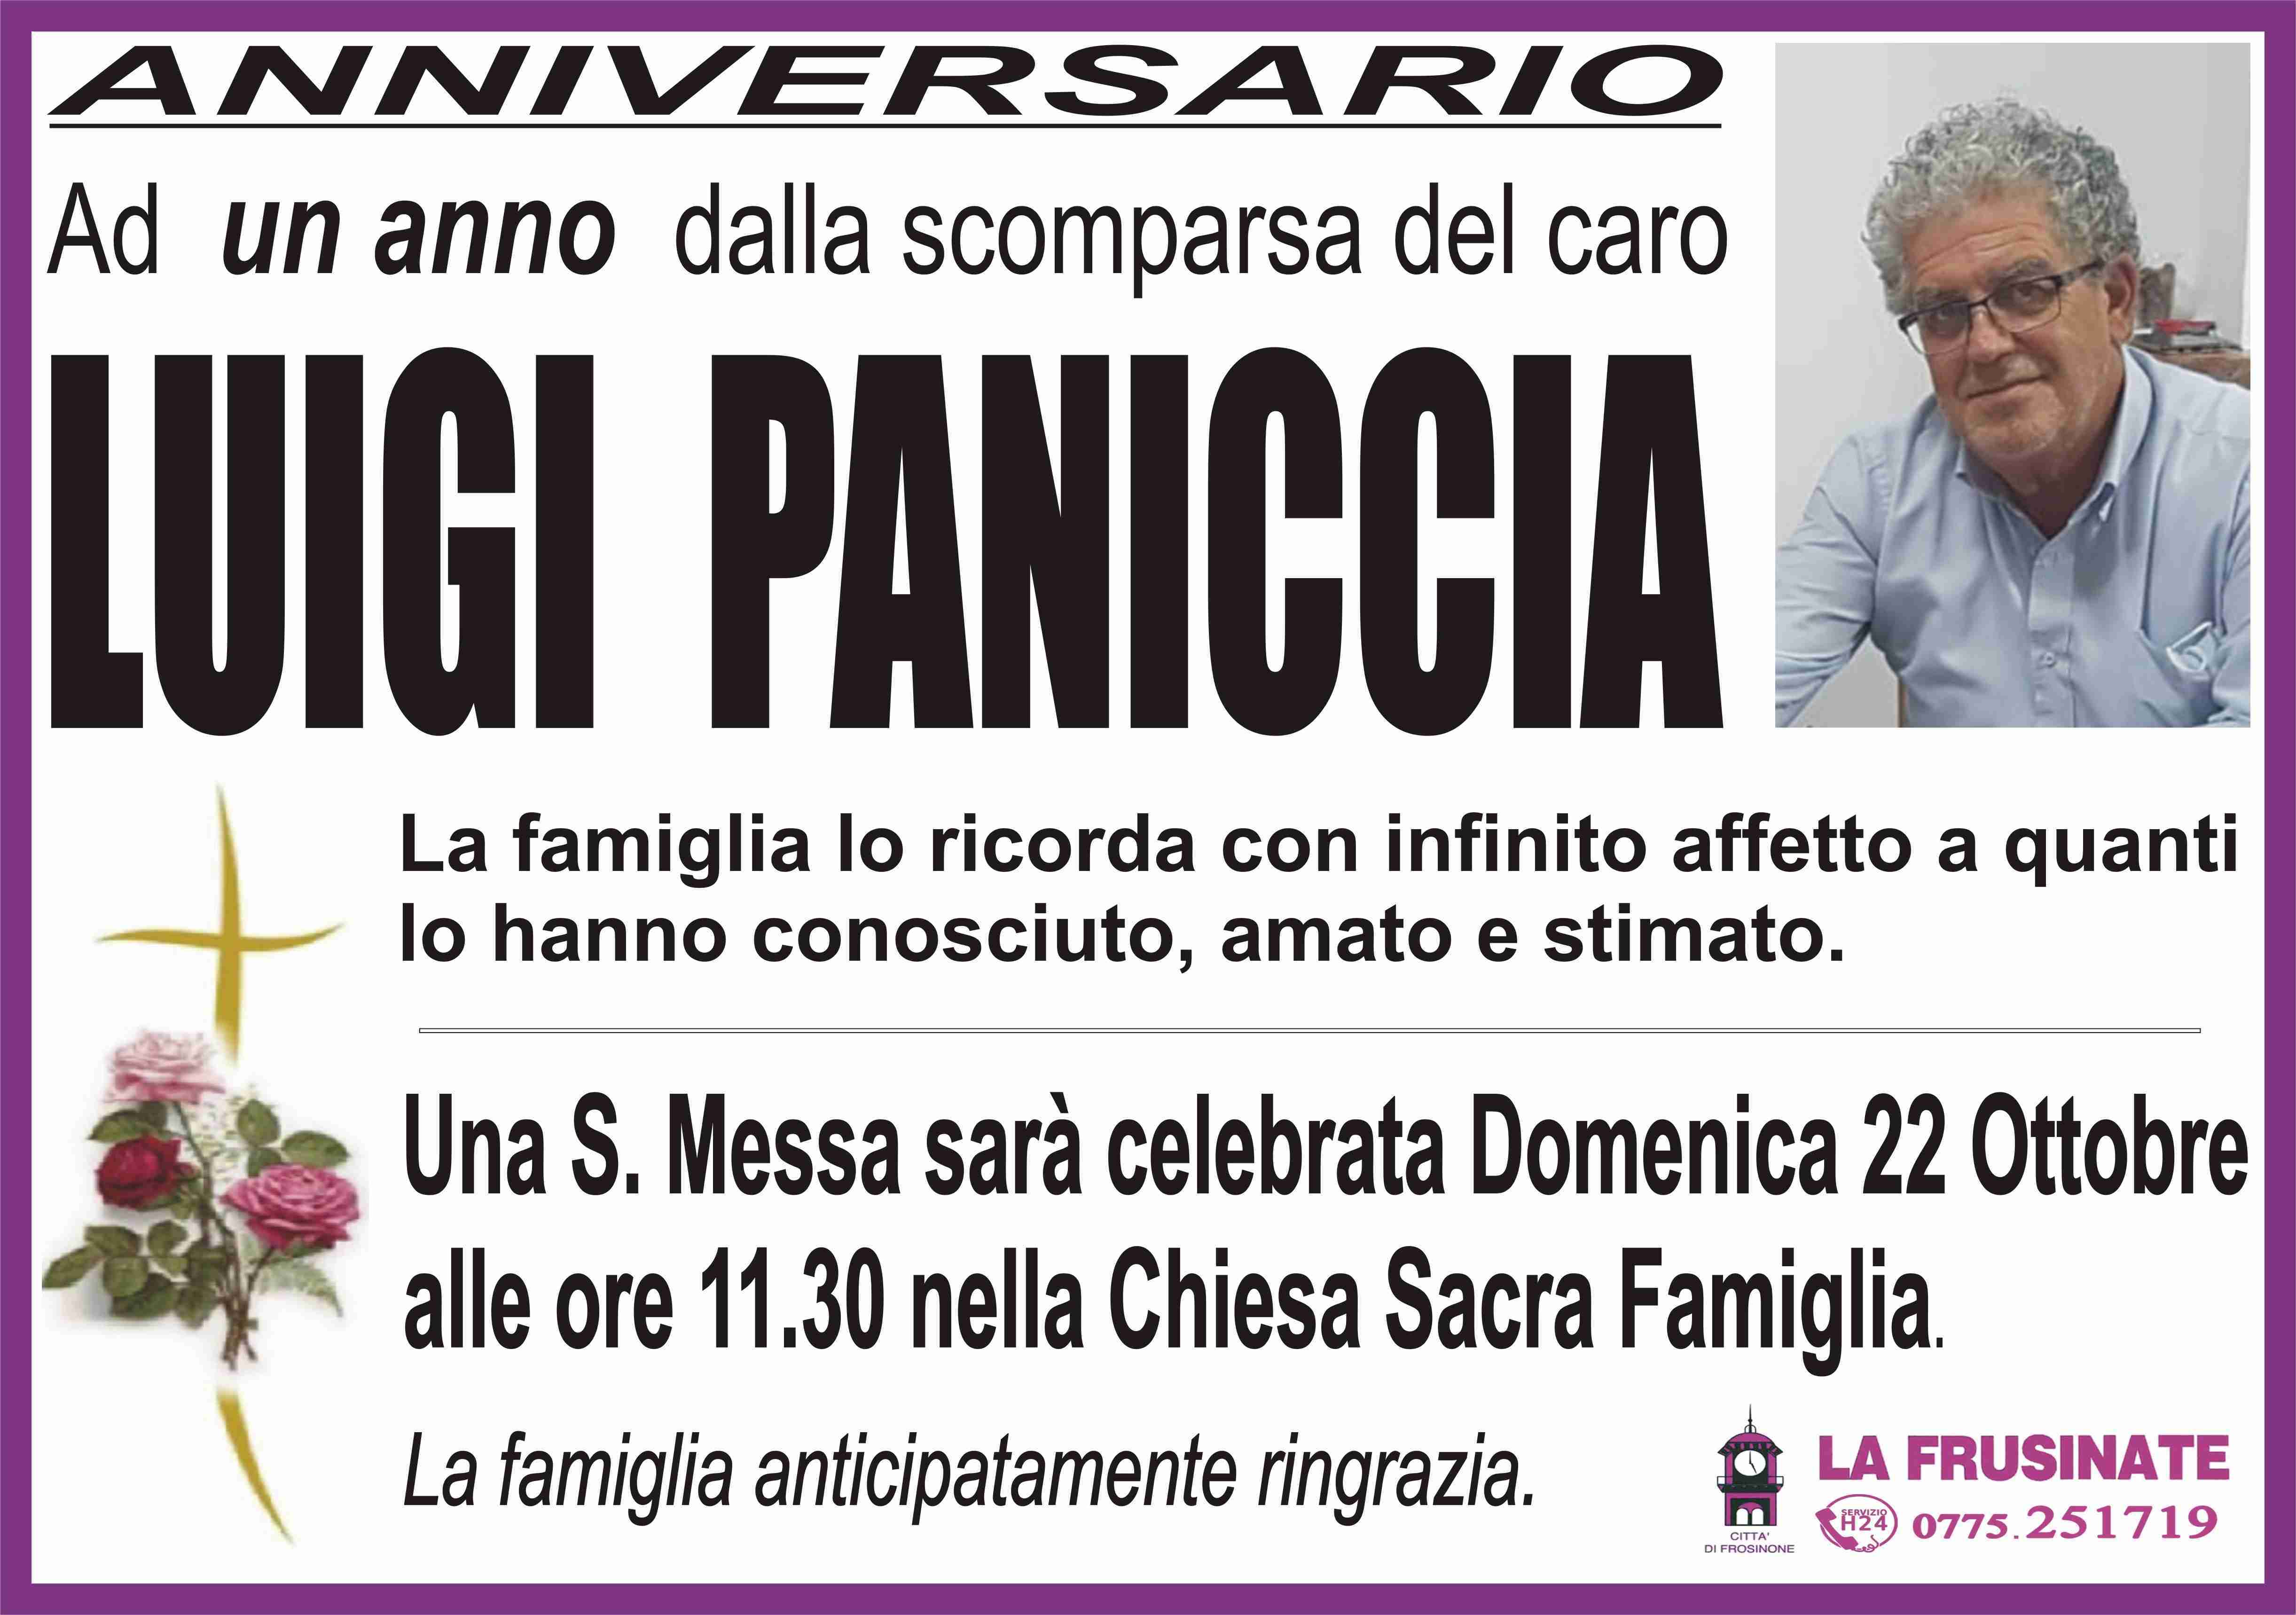 Luigi Paniccia